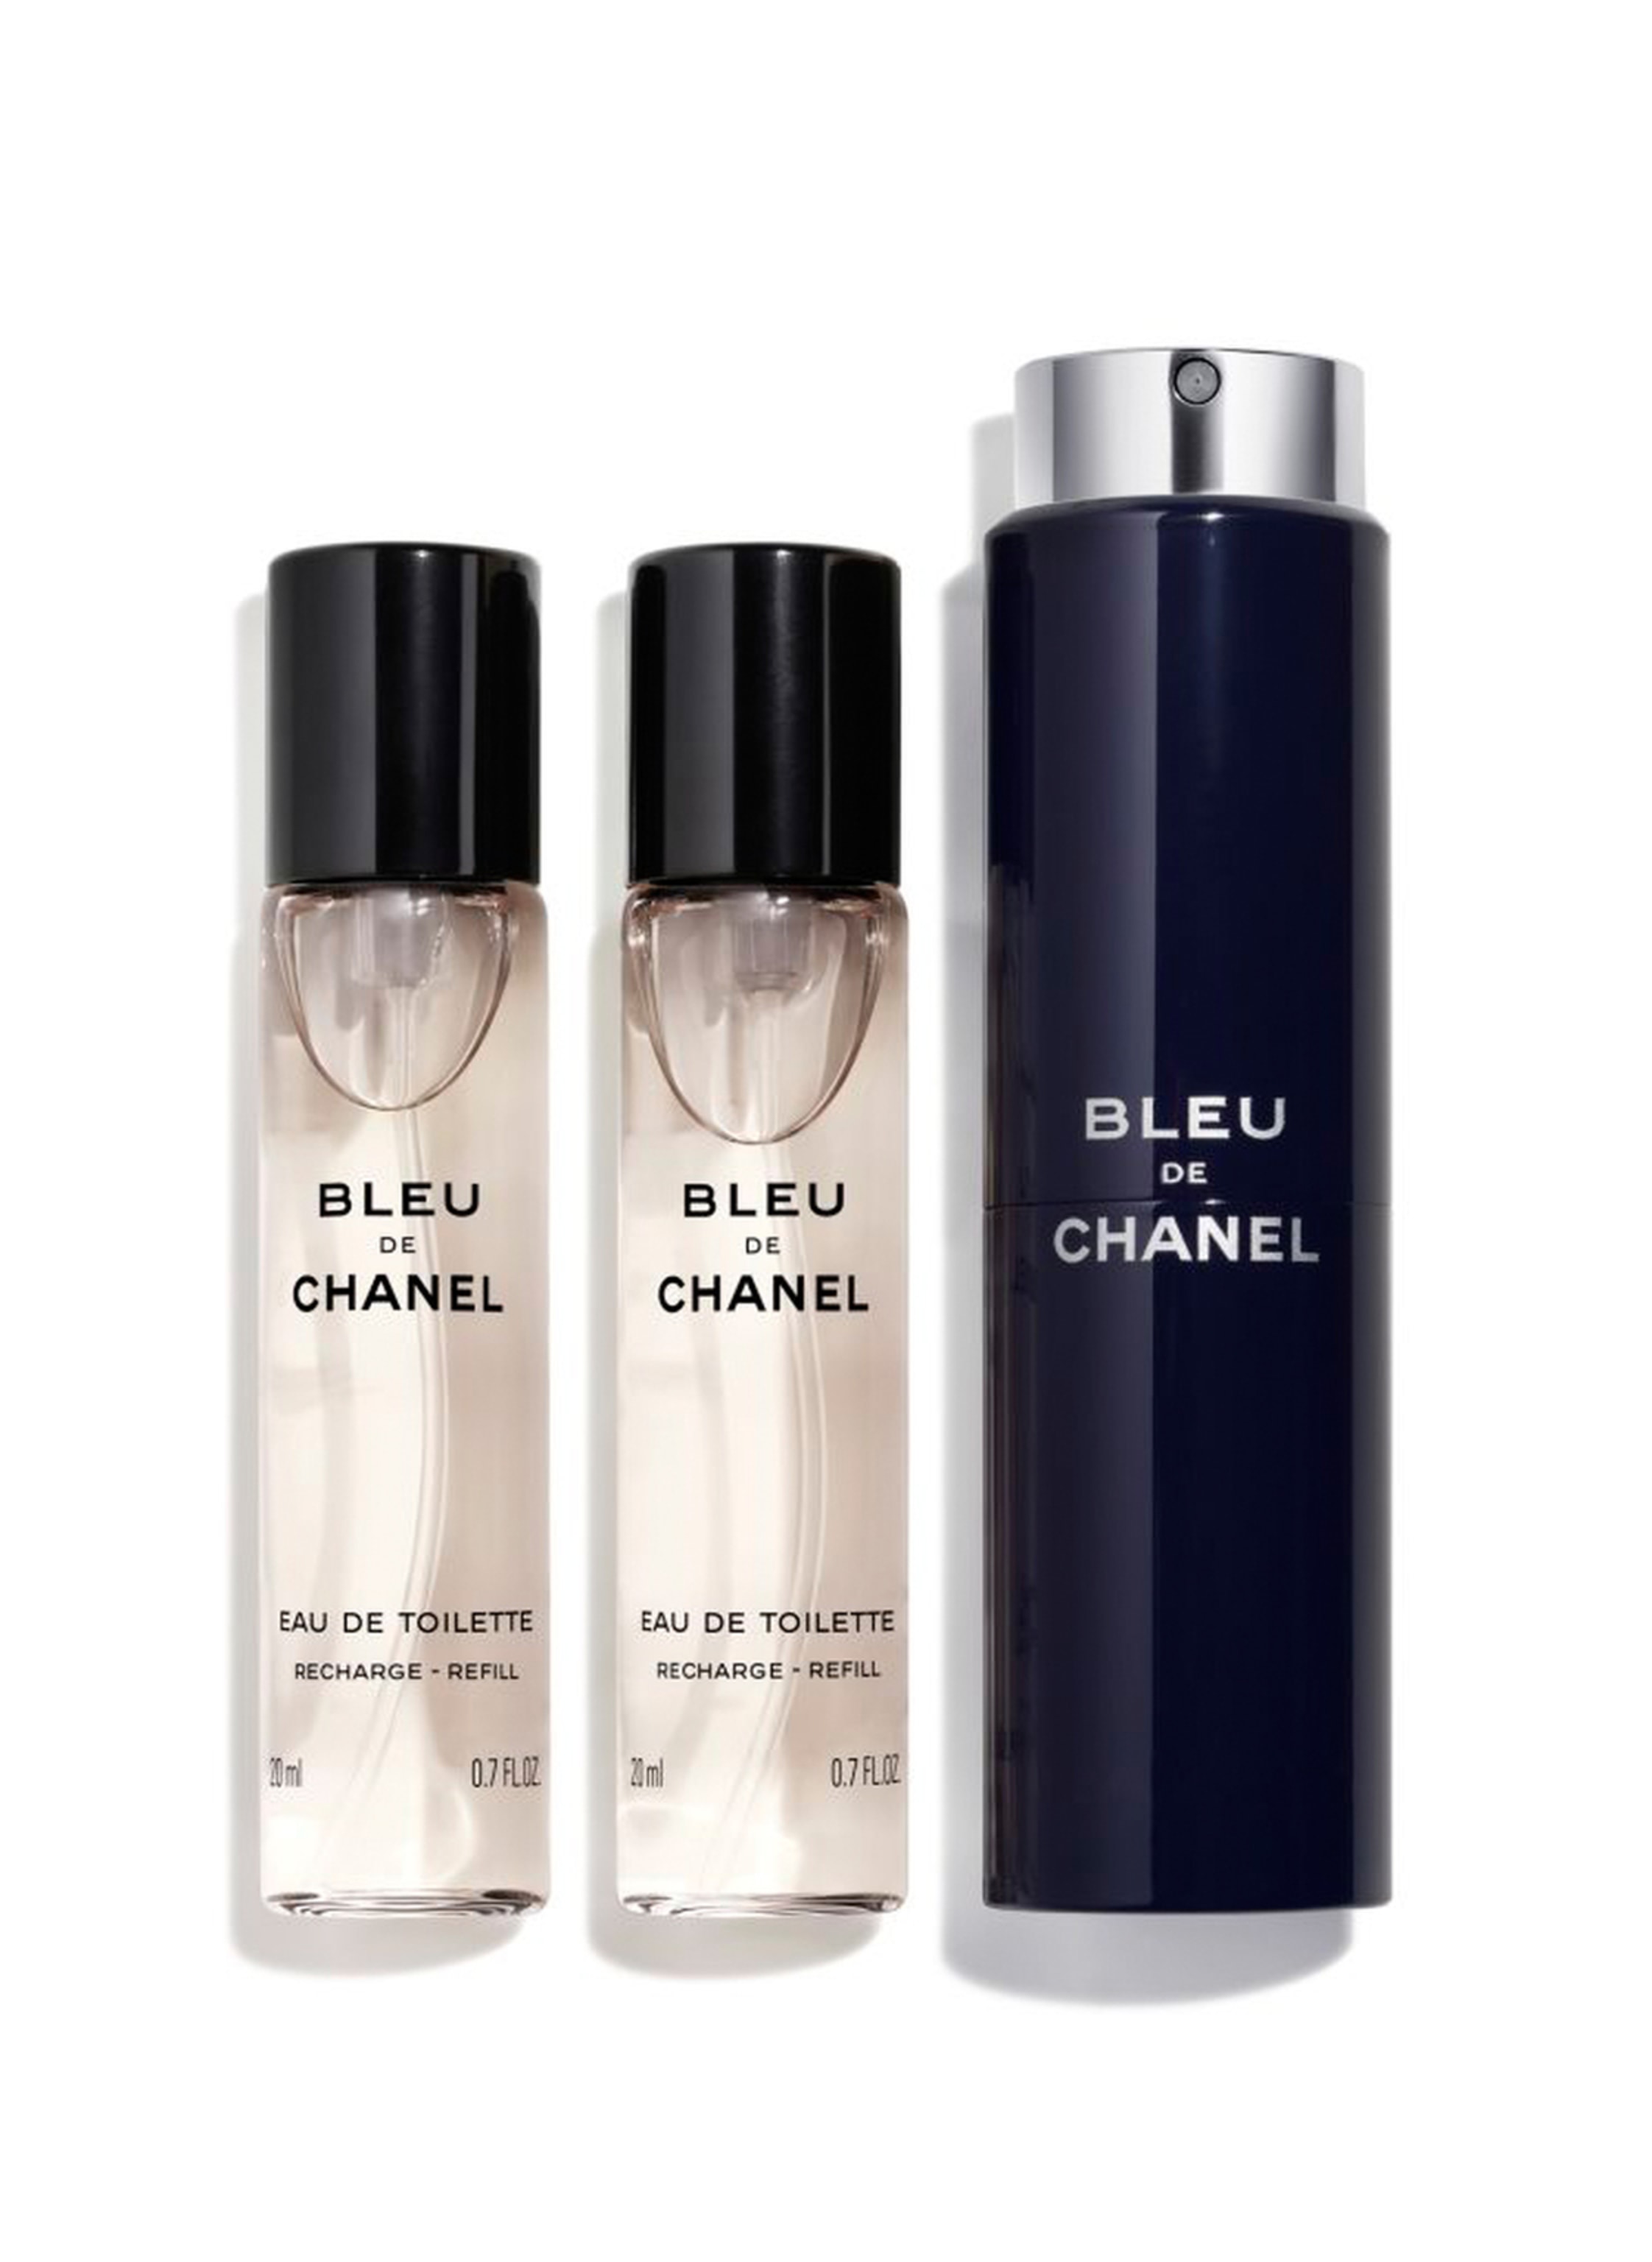 Chanel Bleu de Chanel kaufen » bis zu -22% unter UVP